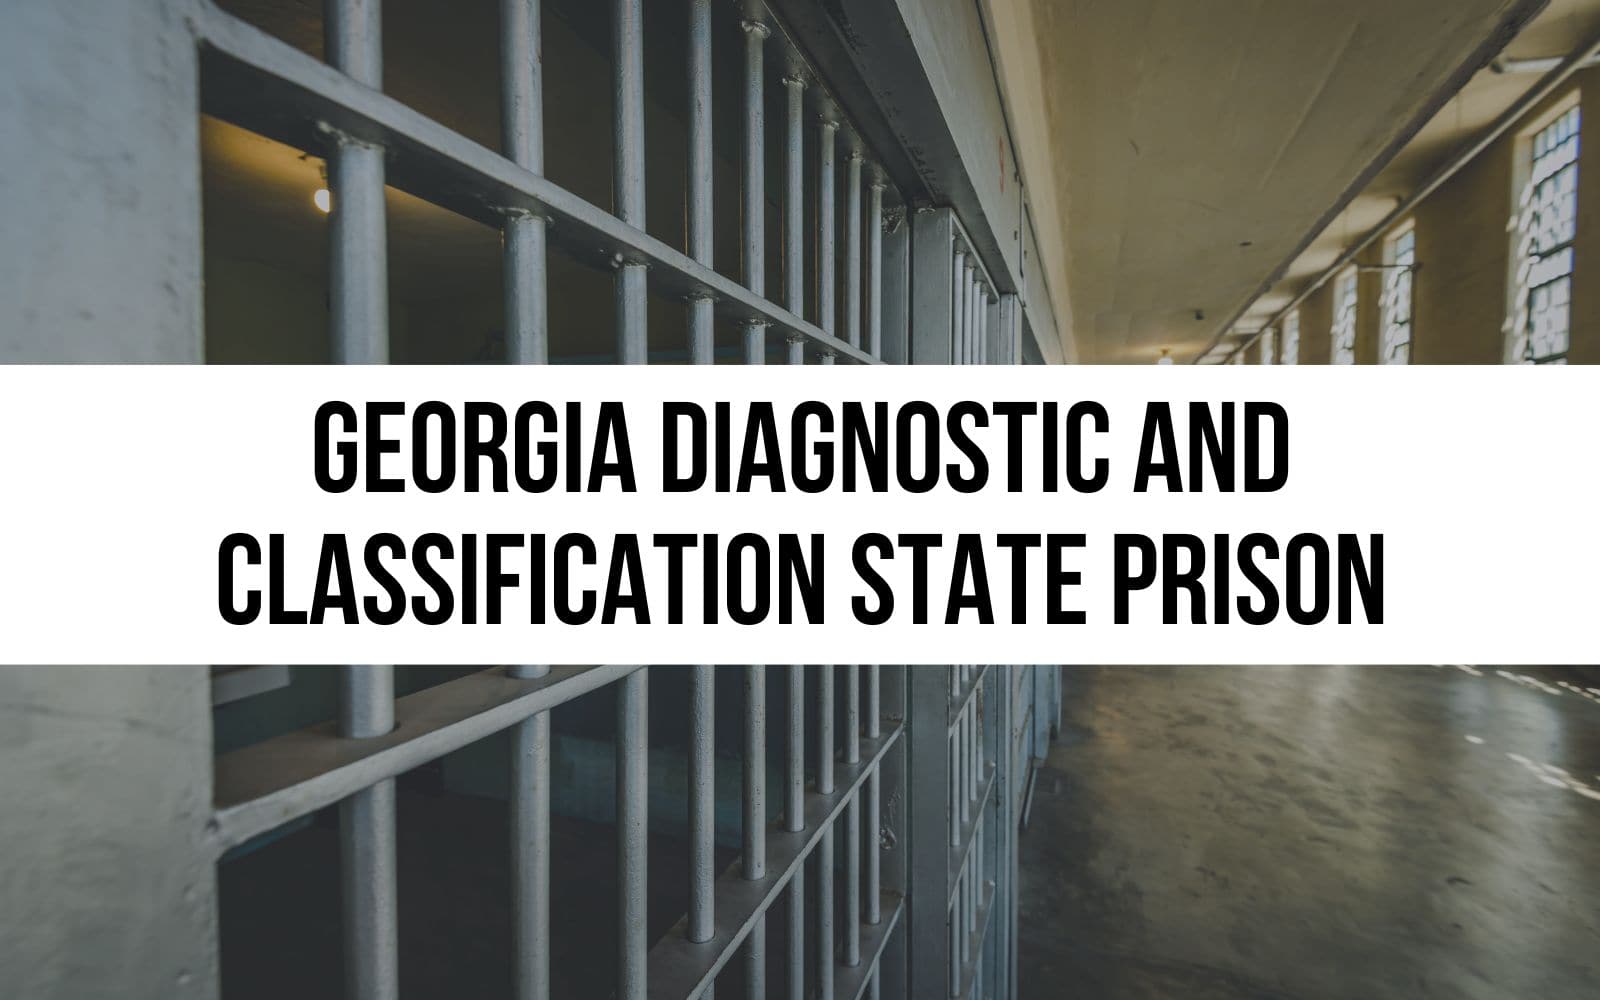 Georgia Diagnostic and Classification State Prison